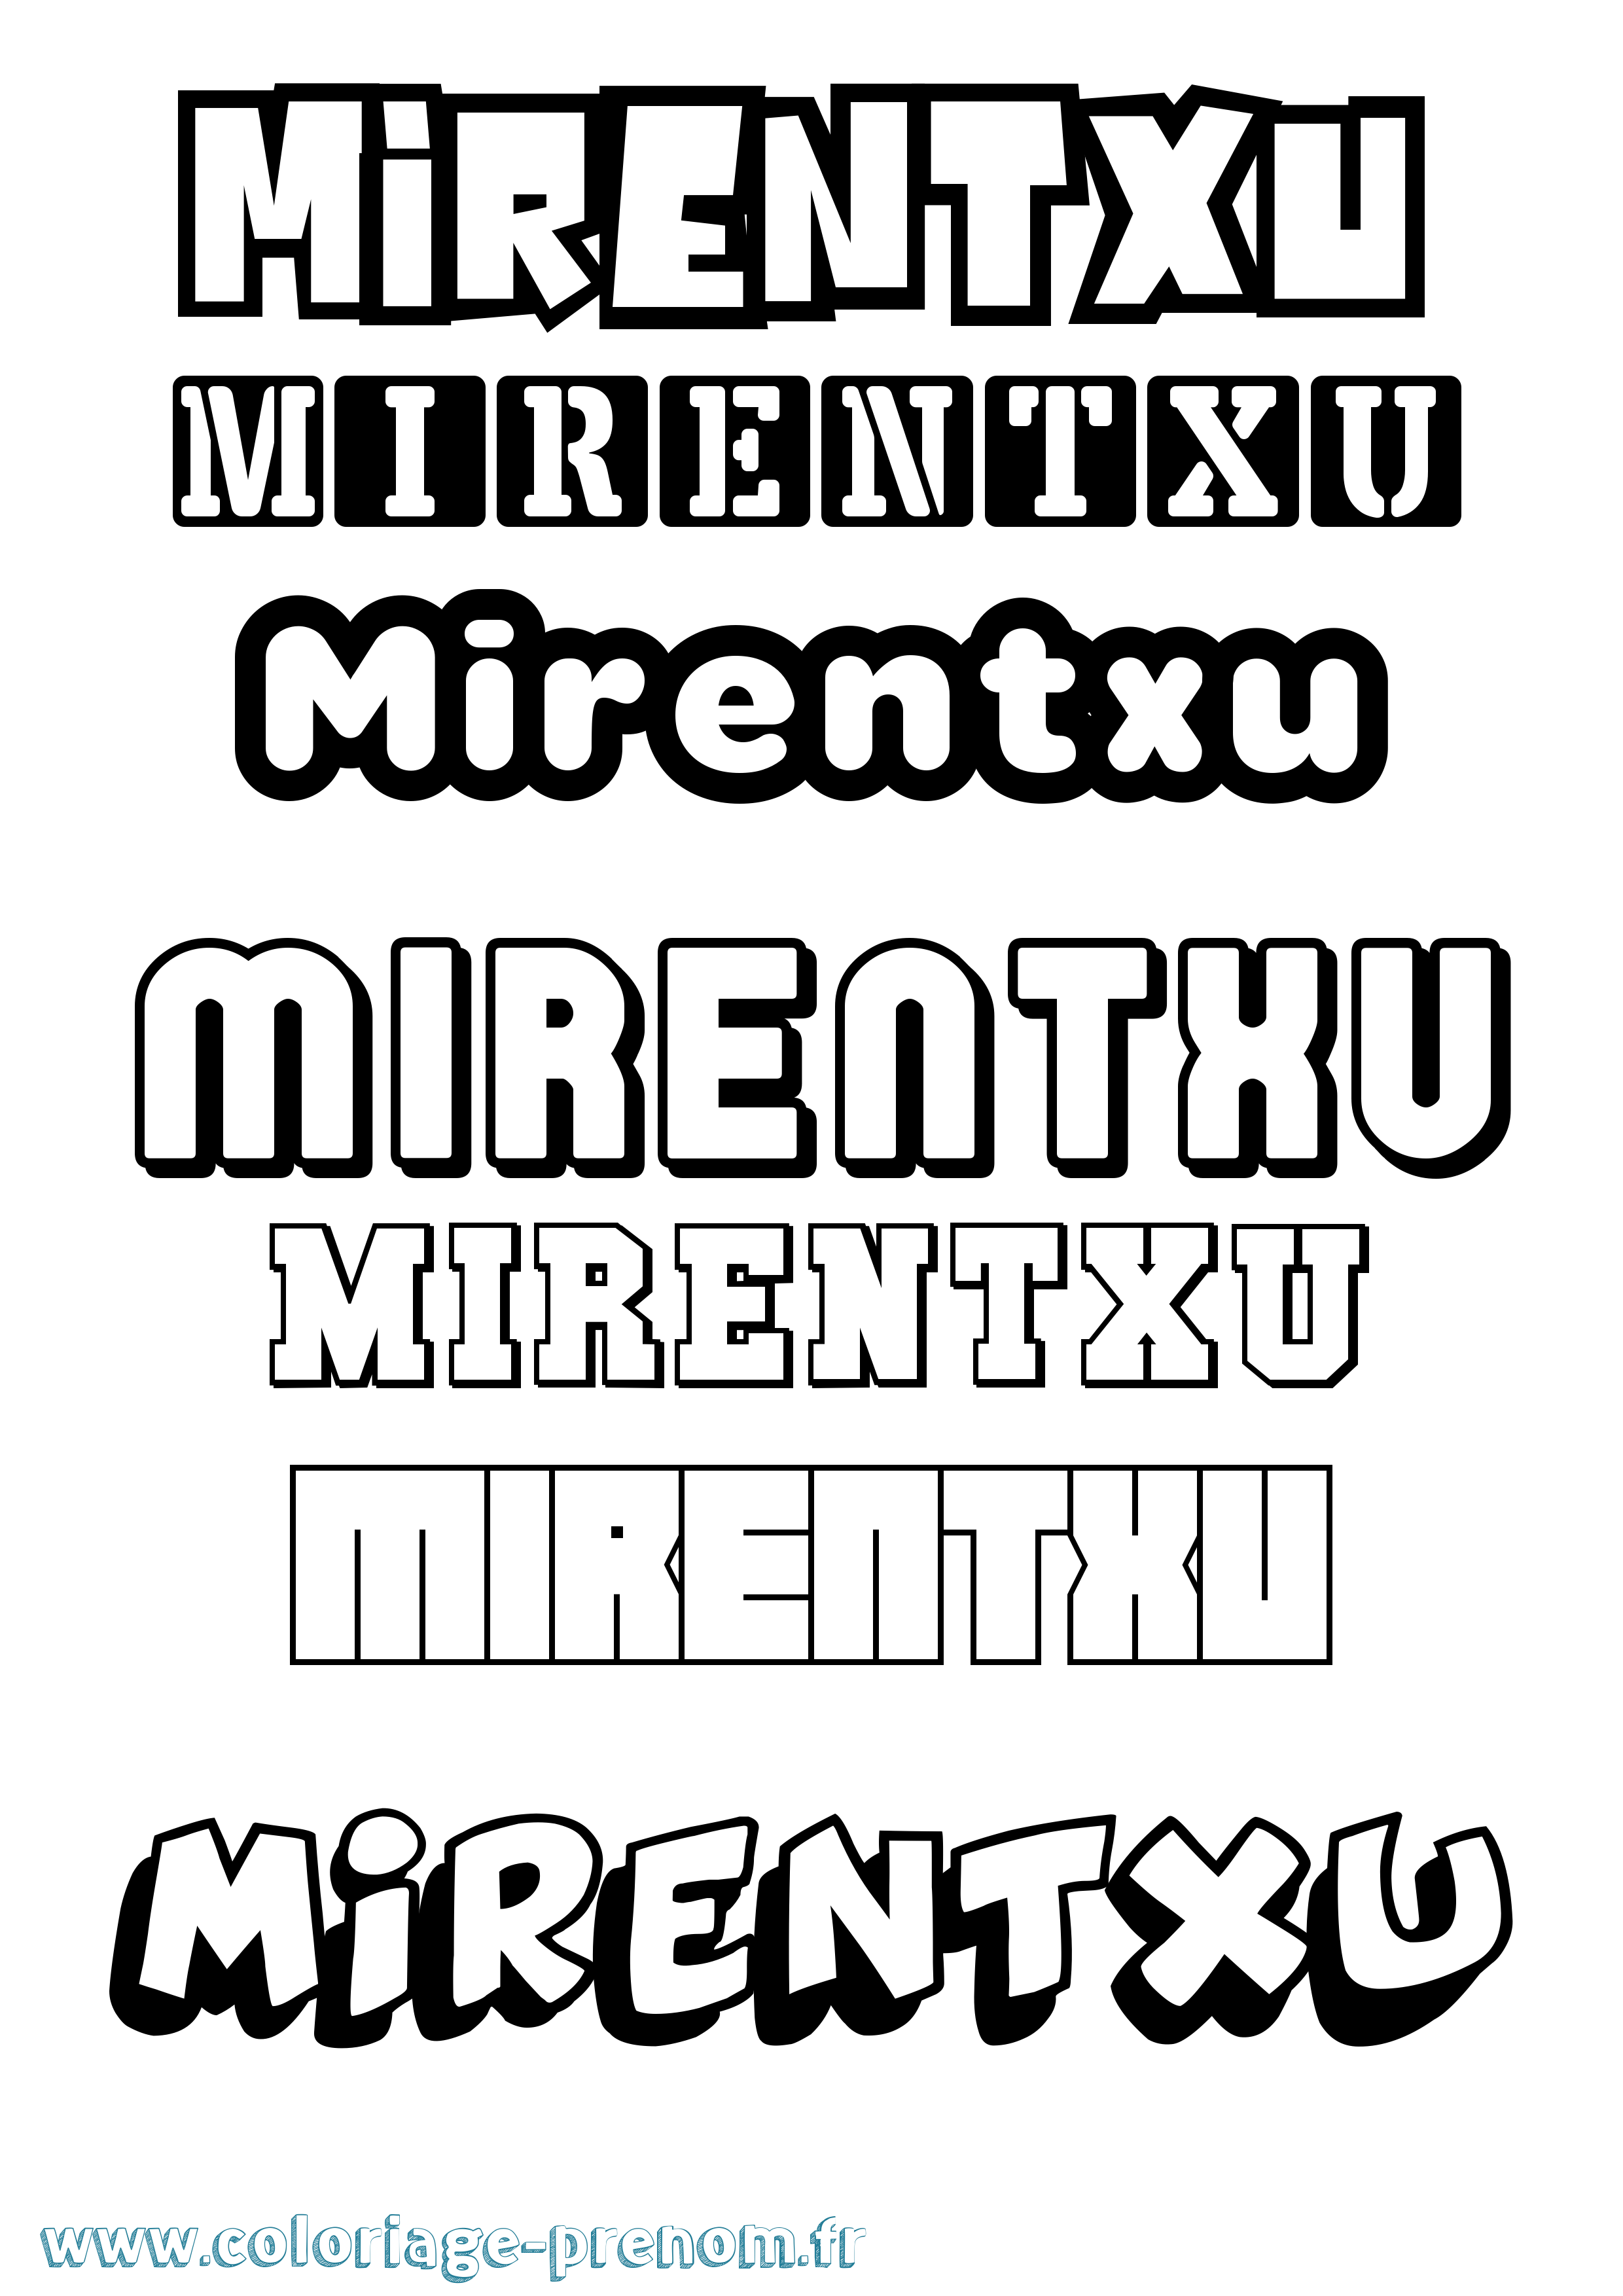 Coloriage prénom Mirentxu Simple